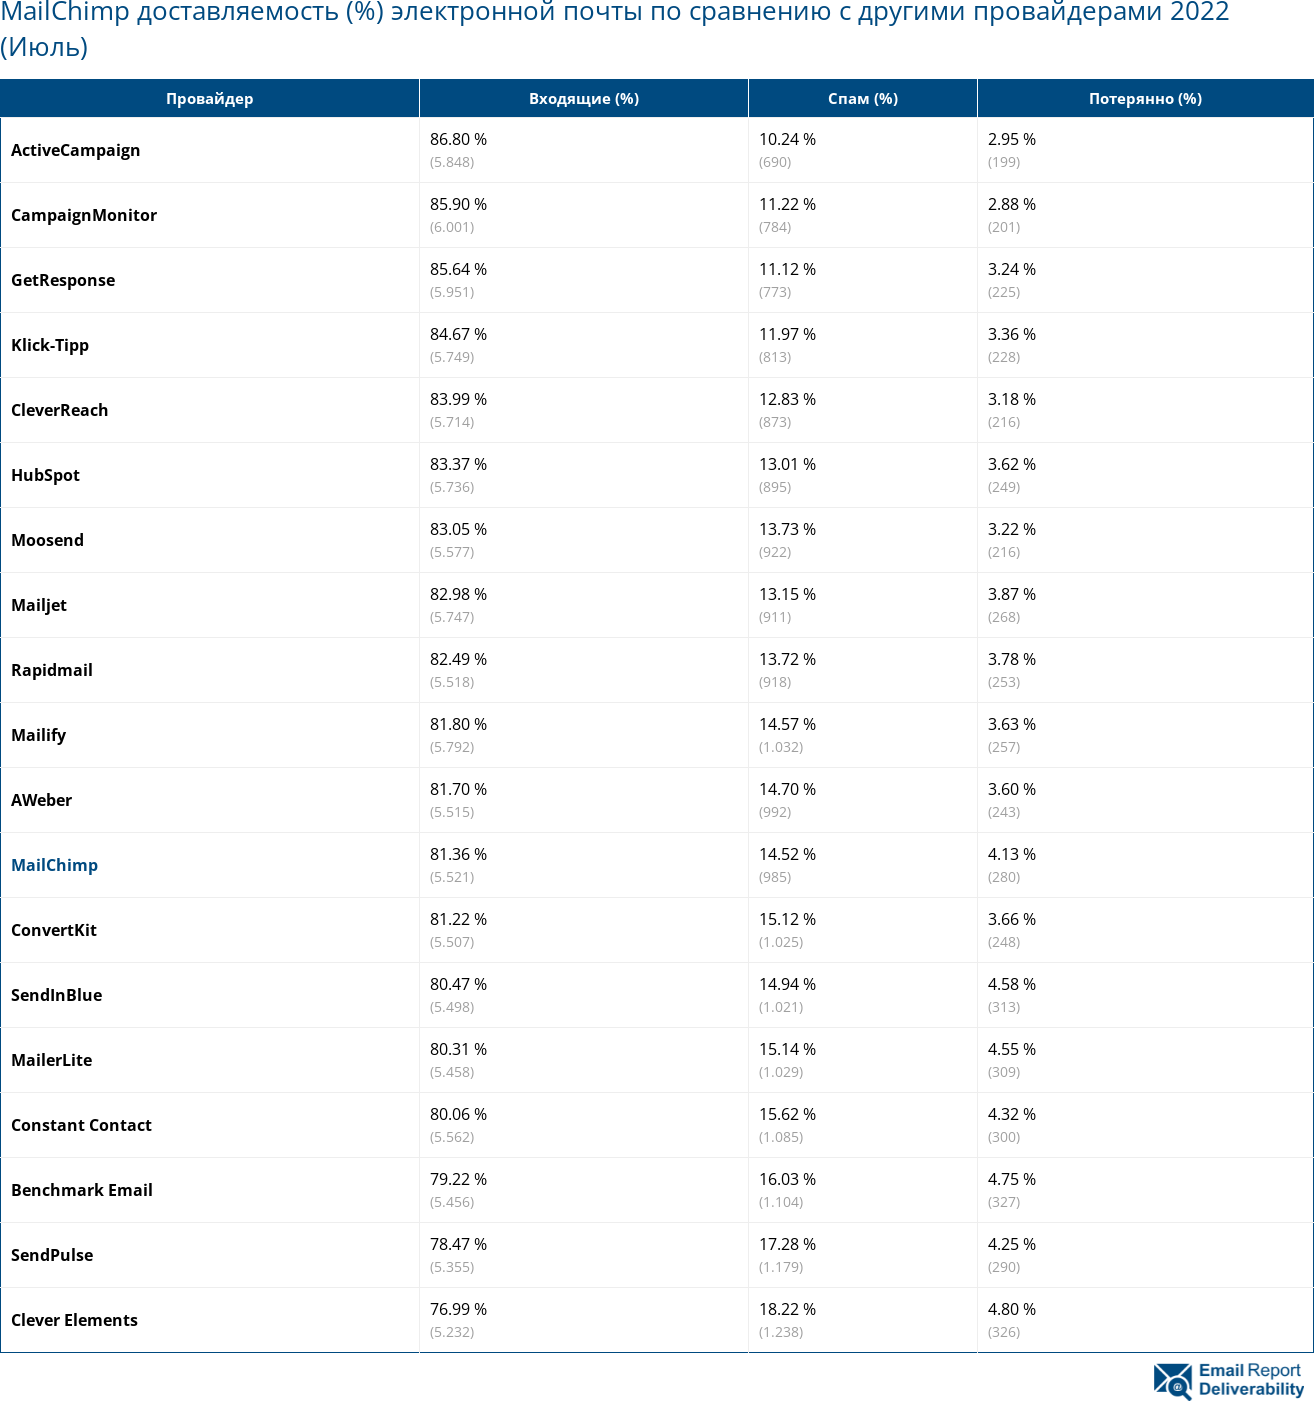 MailChimp доставляемость (%) электронной почты по сравнению с другими провайдерами 2022 (Июль)